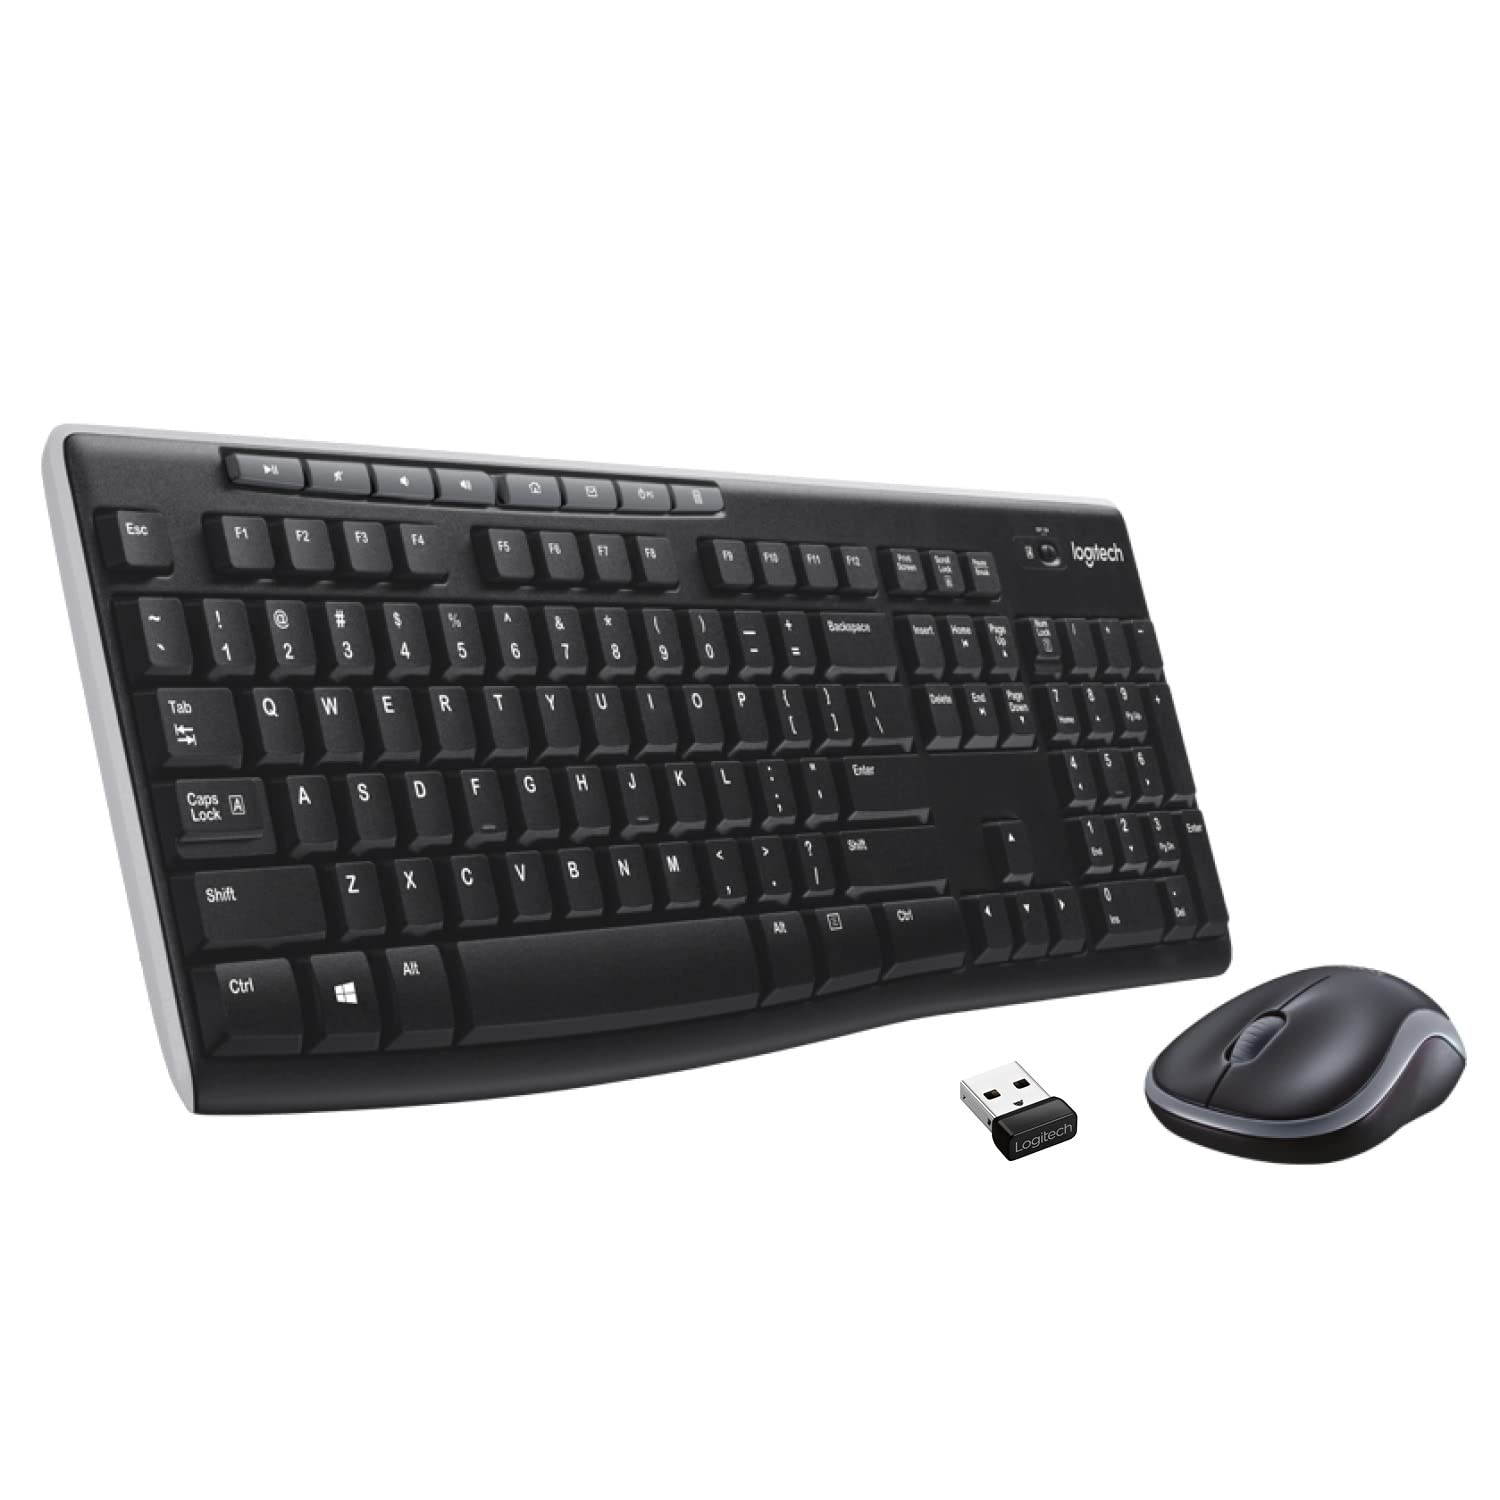 Logitech MK270 Combo de teclado y mouse inalámbricos para Windows, 2.4 GHz inalámbrico, ratón compacto, 8 teclas multimedia y acceso directo, para PC, portátil, color negro